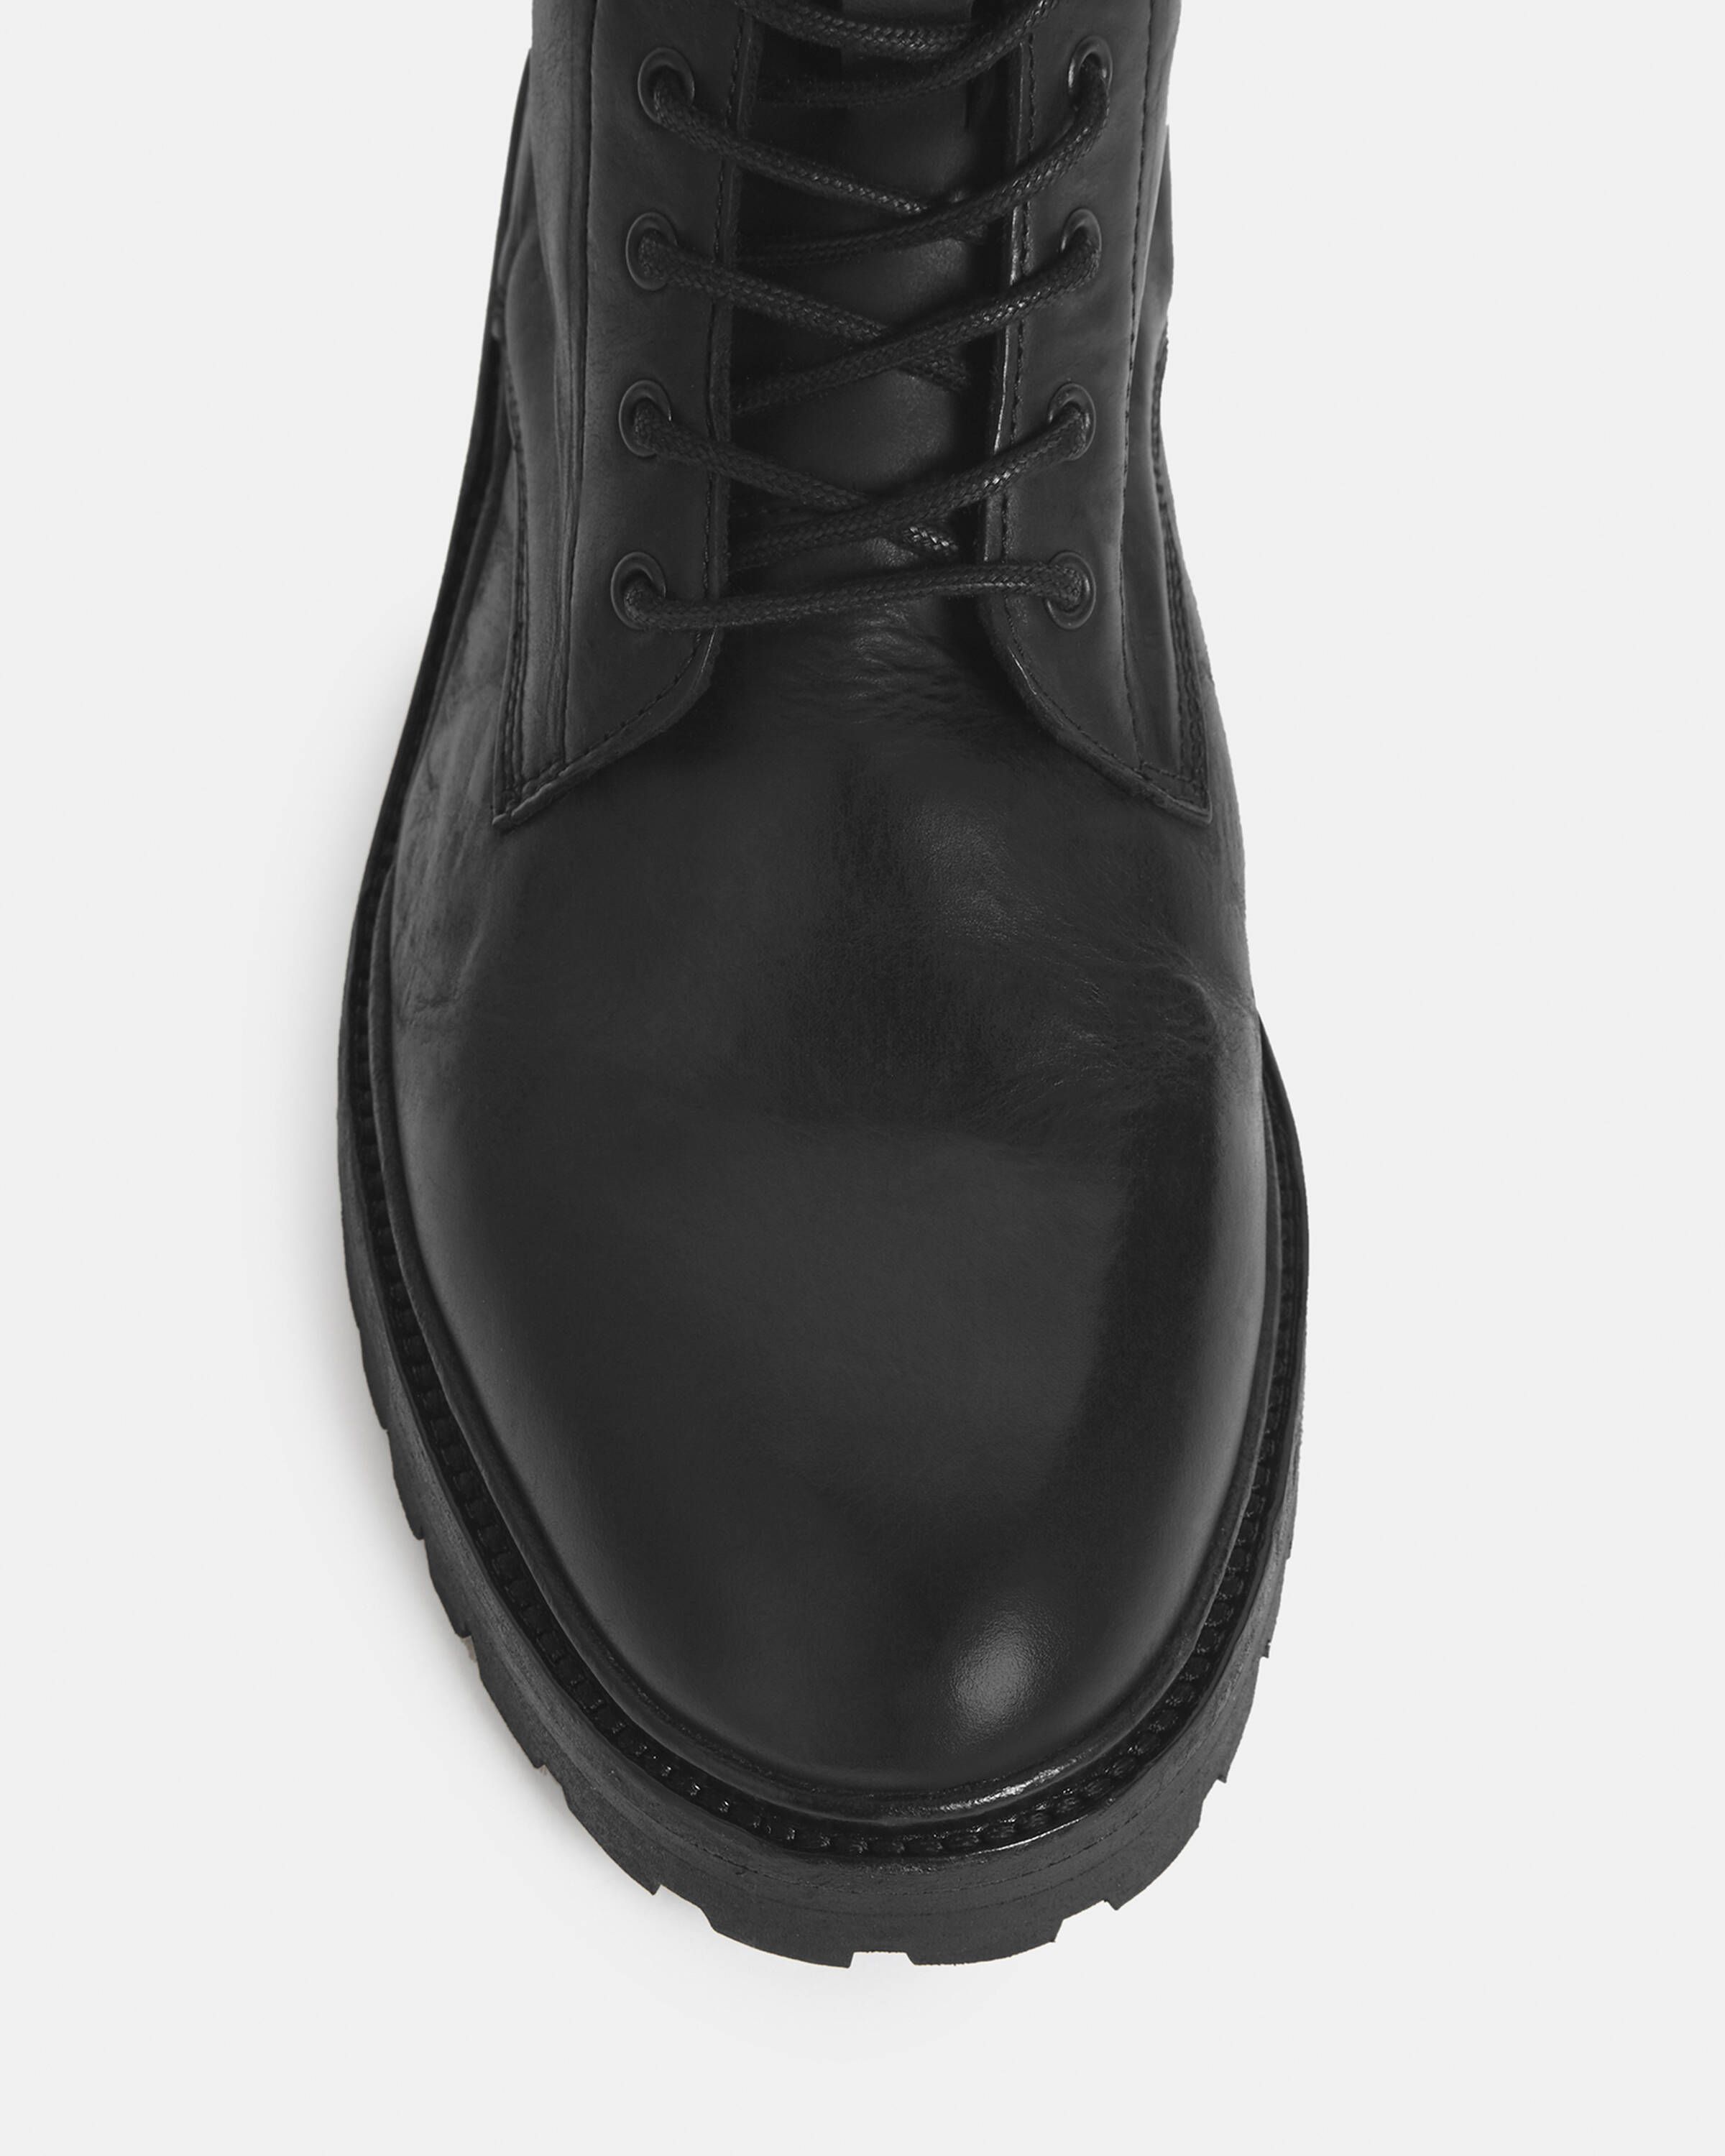 Tobias Leather Boots Black | ALLSAINTS US | AllSaints US